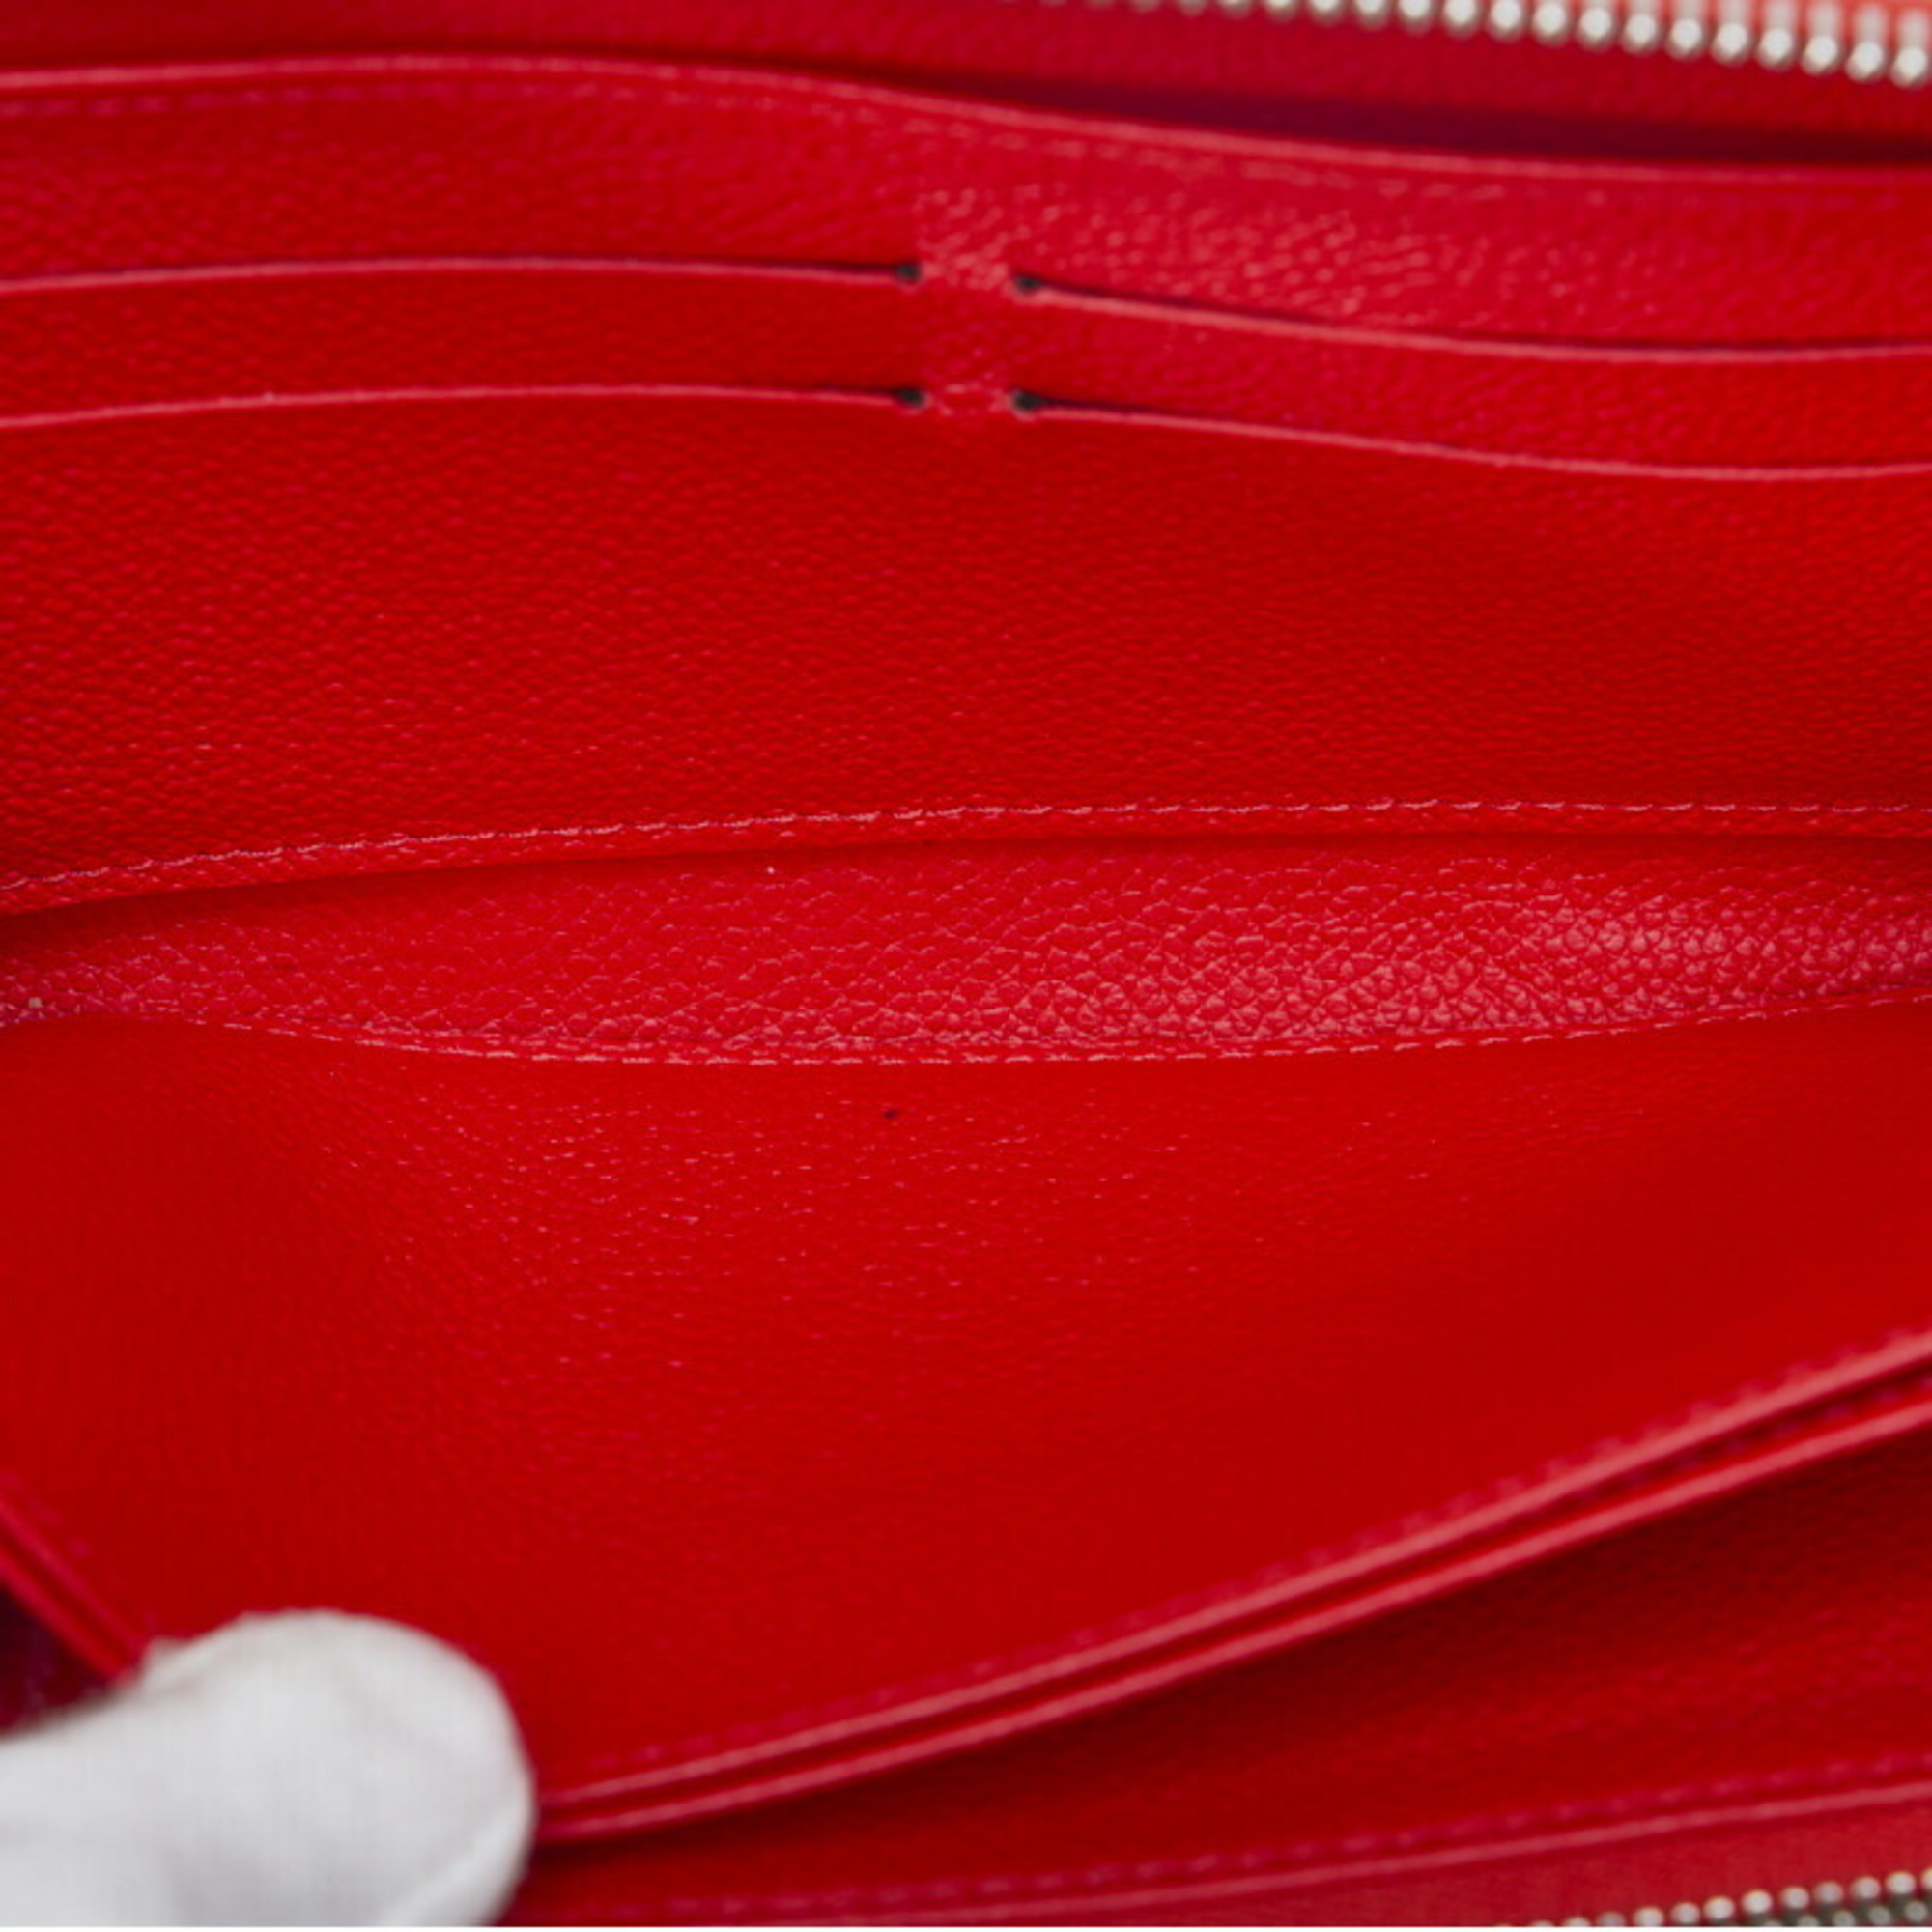 Louis Vuitton Monogram Implant Zippy Long Wallet M61865 Cerise Red Calf Leather Women's LOUIS VUITTON